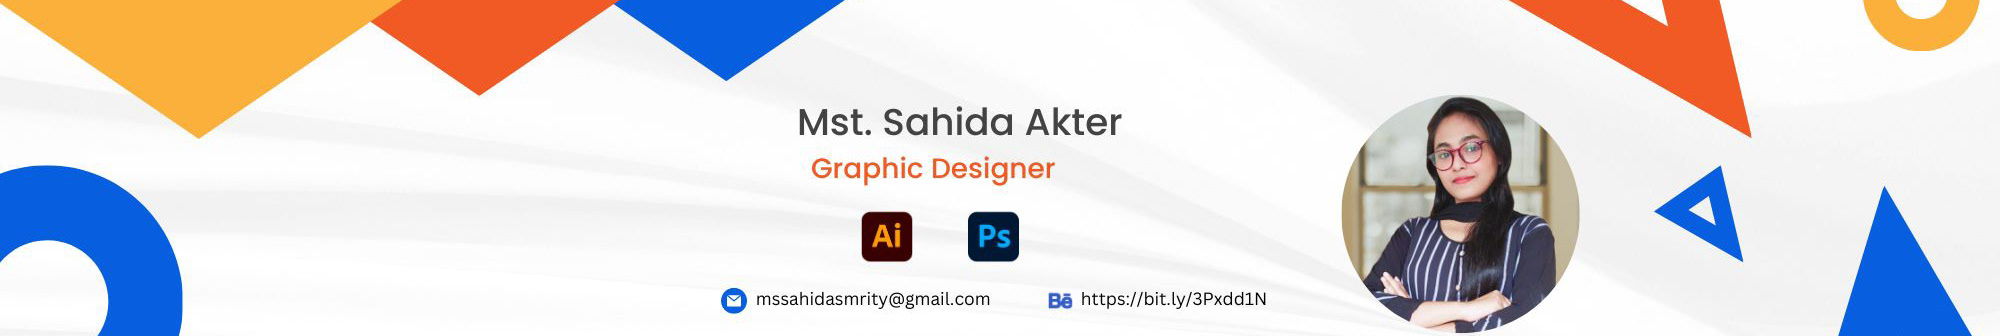 Mst. Sahida Akter's profile banner